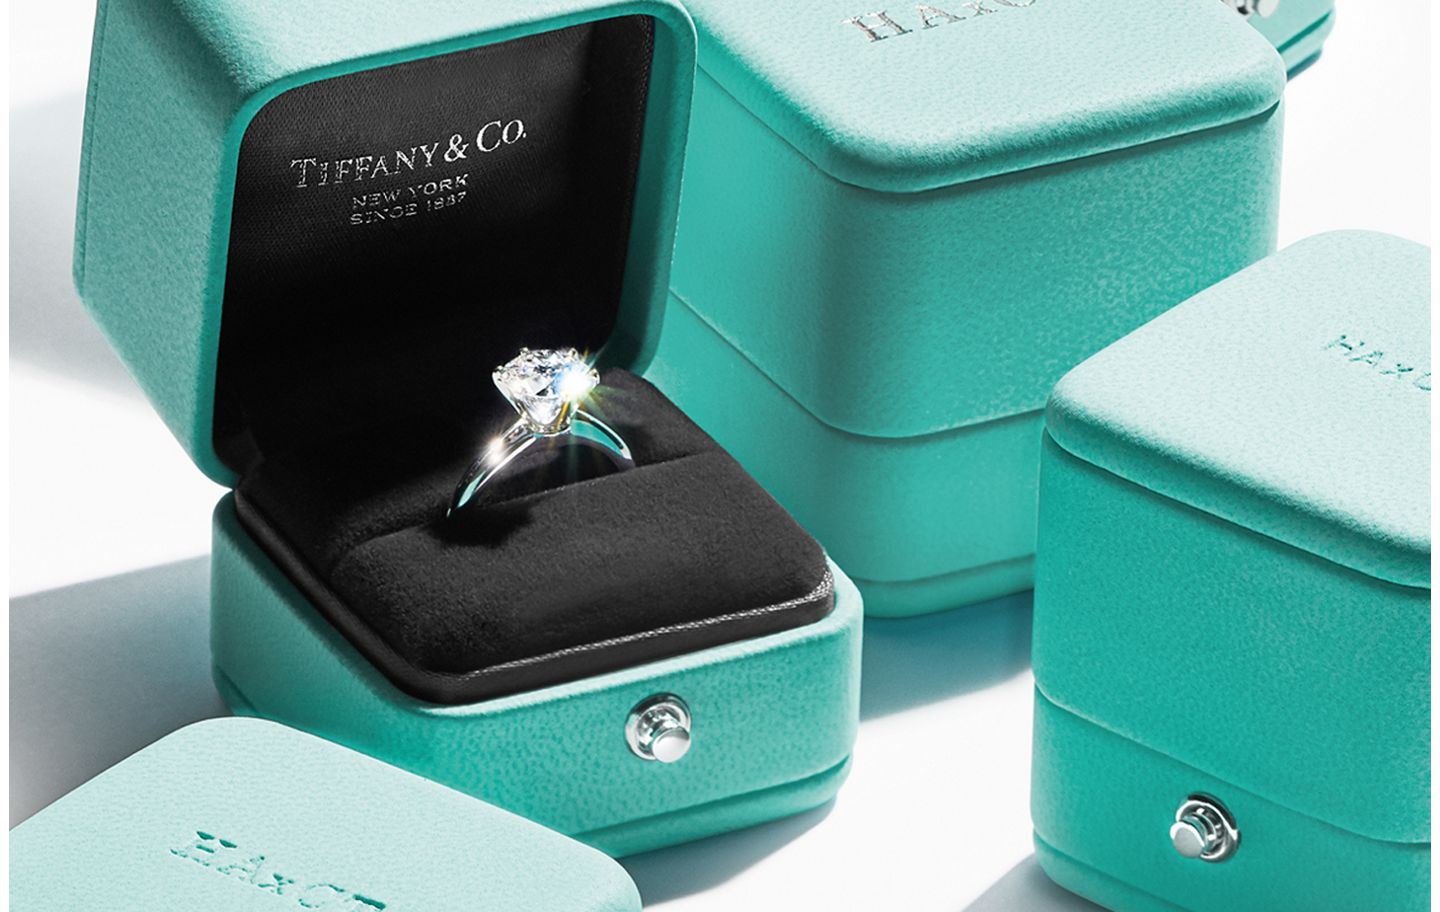 Tiffany & Co. salaries in New York, NY: How much does Tiffany & Co